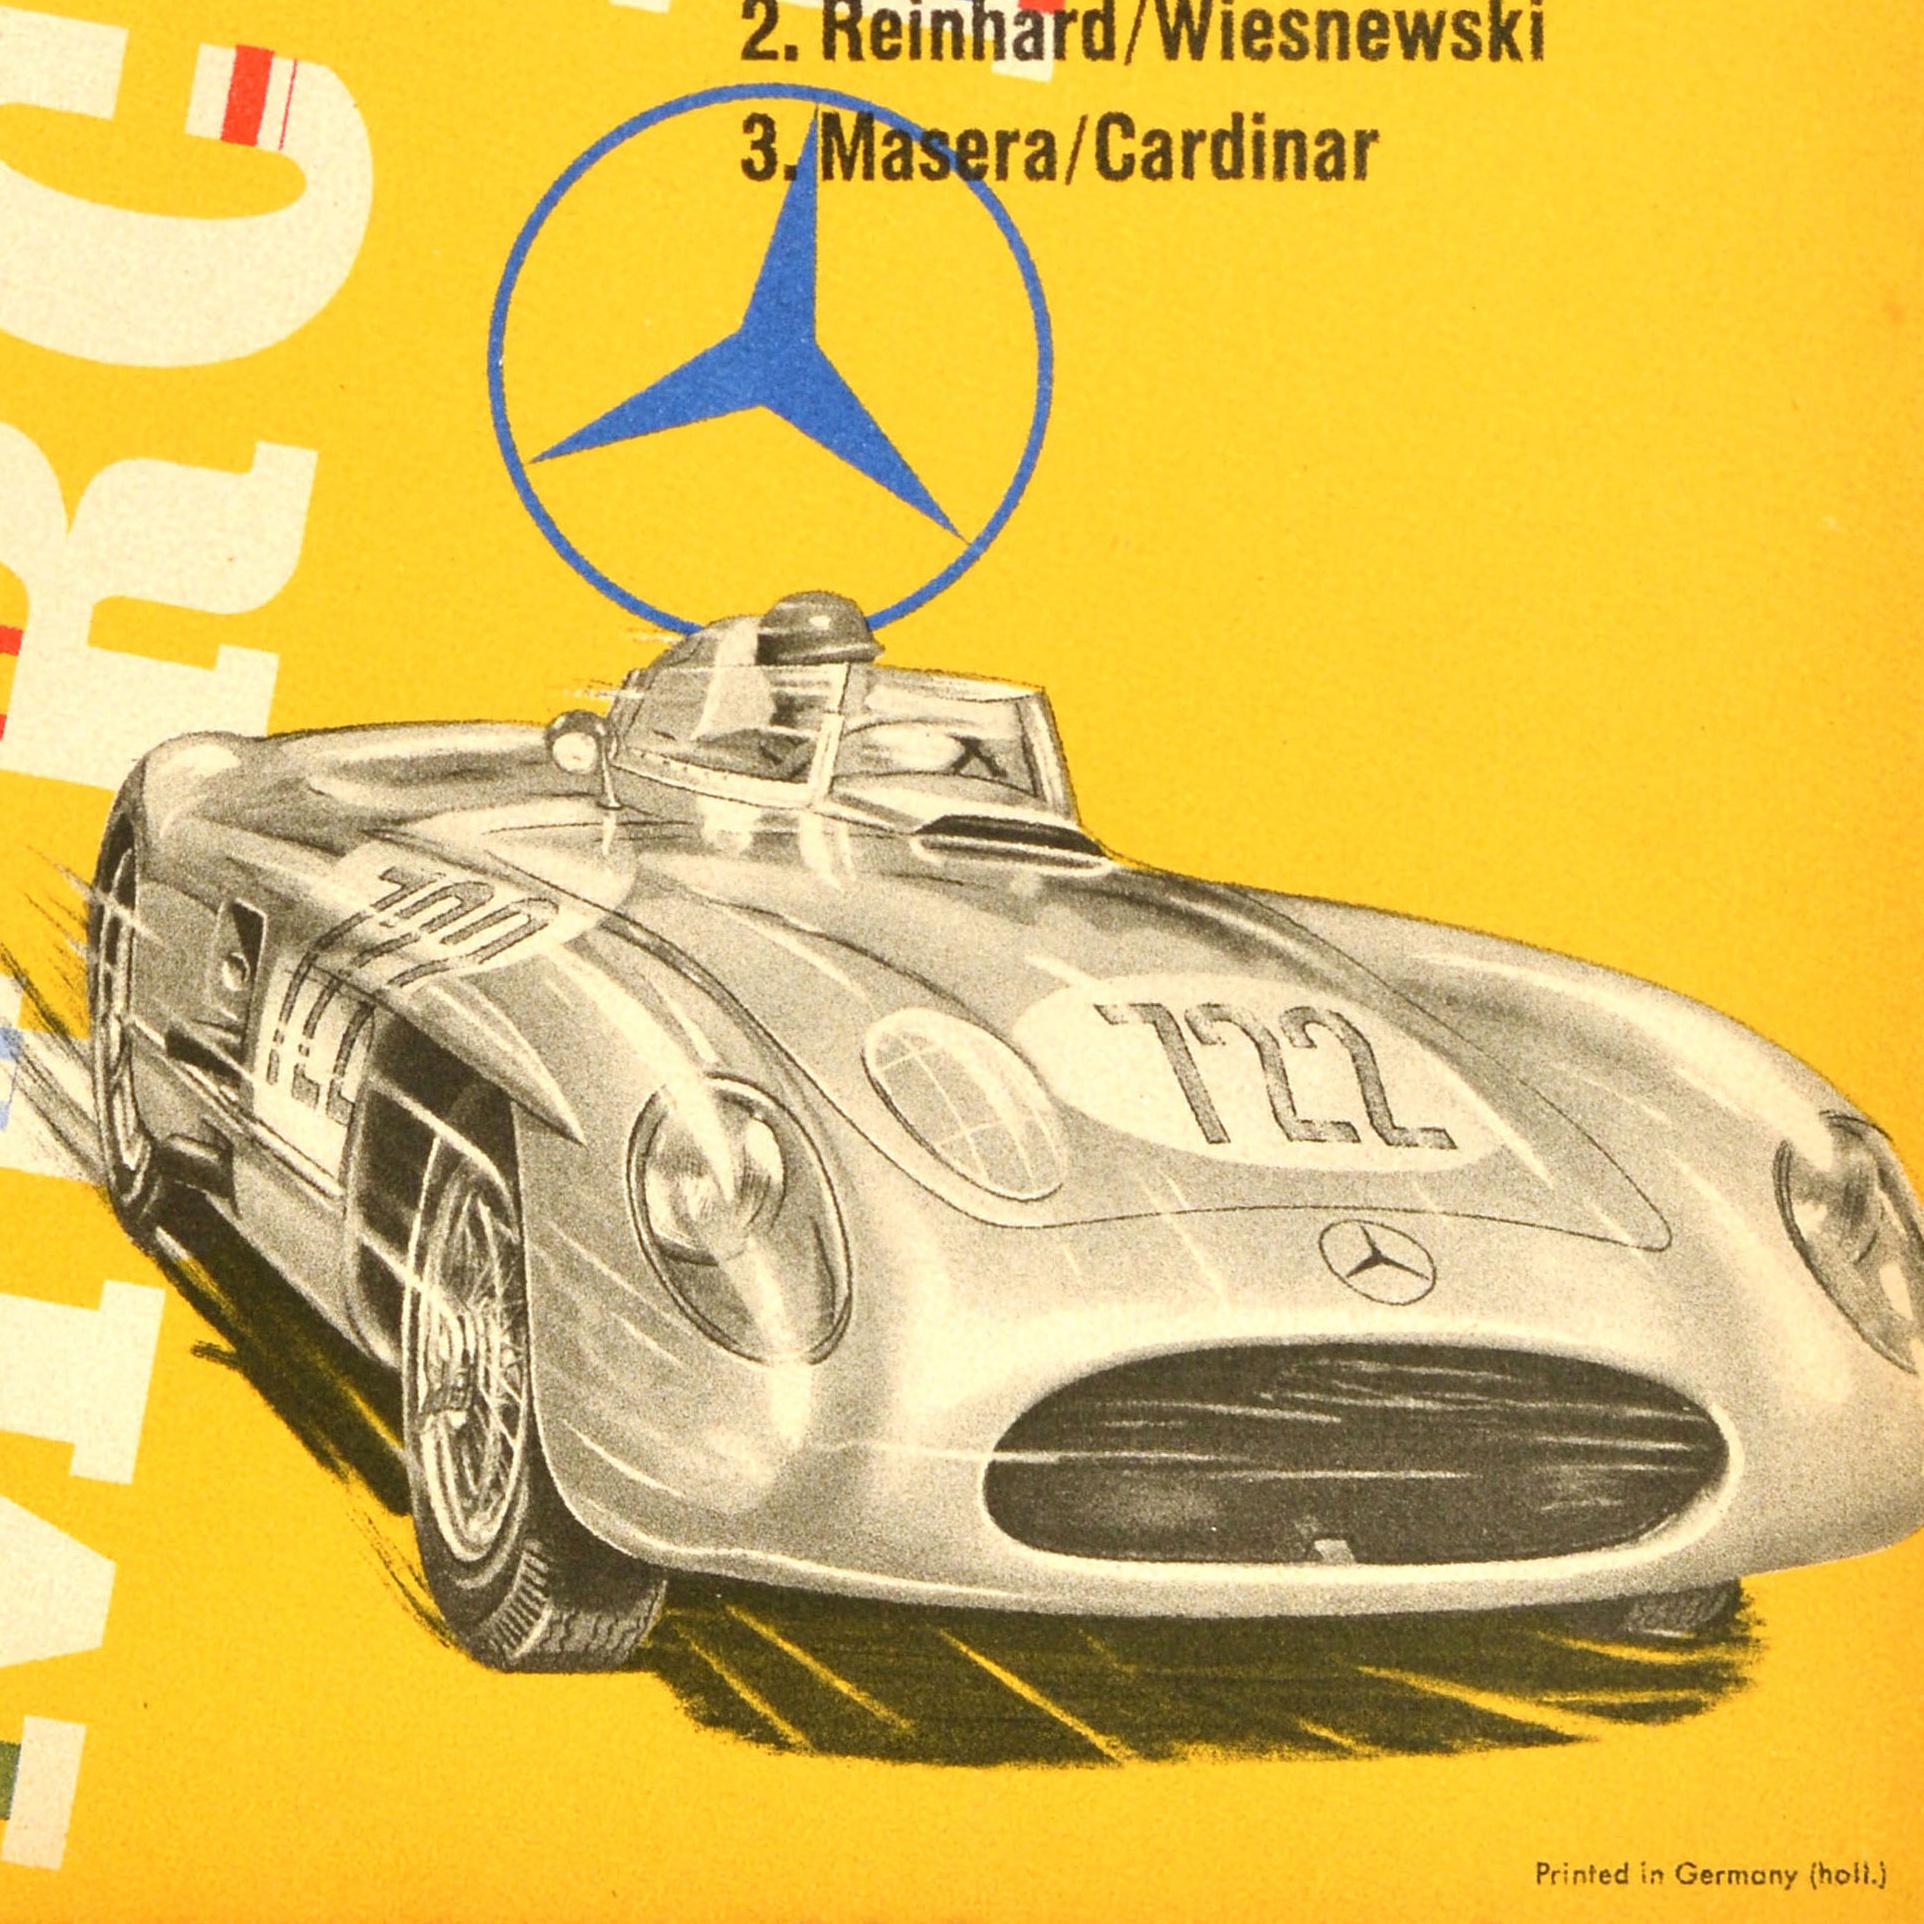 Affiche originale de course automobile vintage éditée par Mercedes Benz pour commémorer leurs victoires aux XXII courses des Mille Miglia en 1955 avec une liste des classements : Voitures de sport de course / Race Sportswagens (300SLR) 1. Stirling